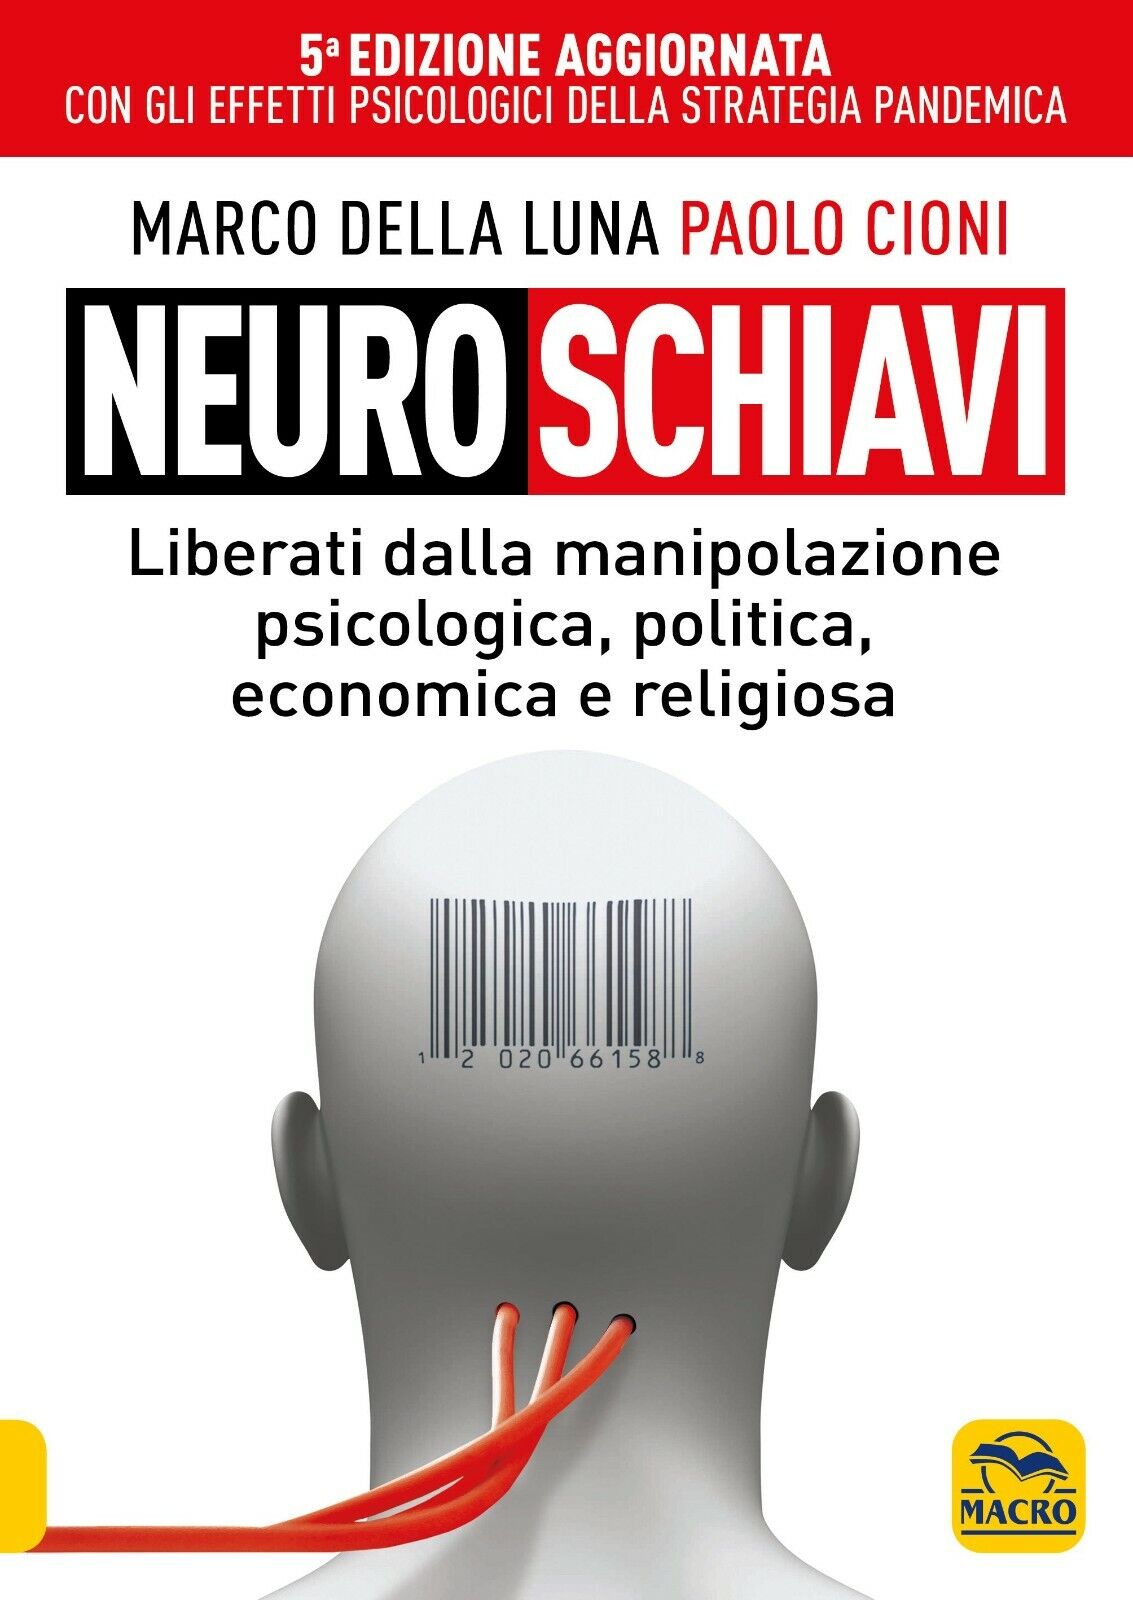 Neuroschiavi di Marco Della Luna, Paolo Cioni,  2021,  Macro Edizioni